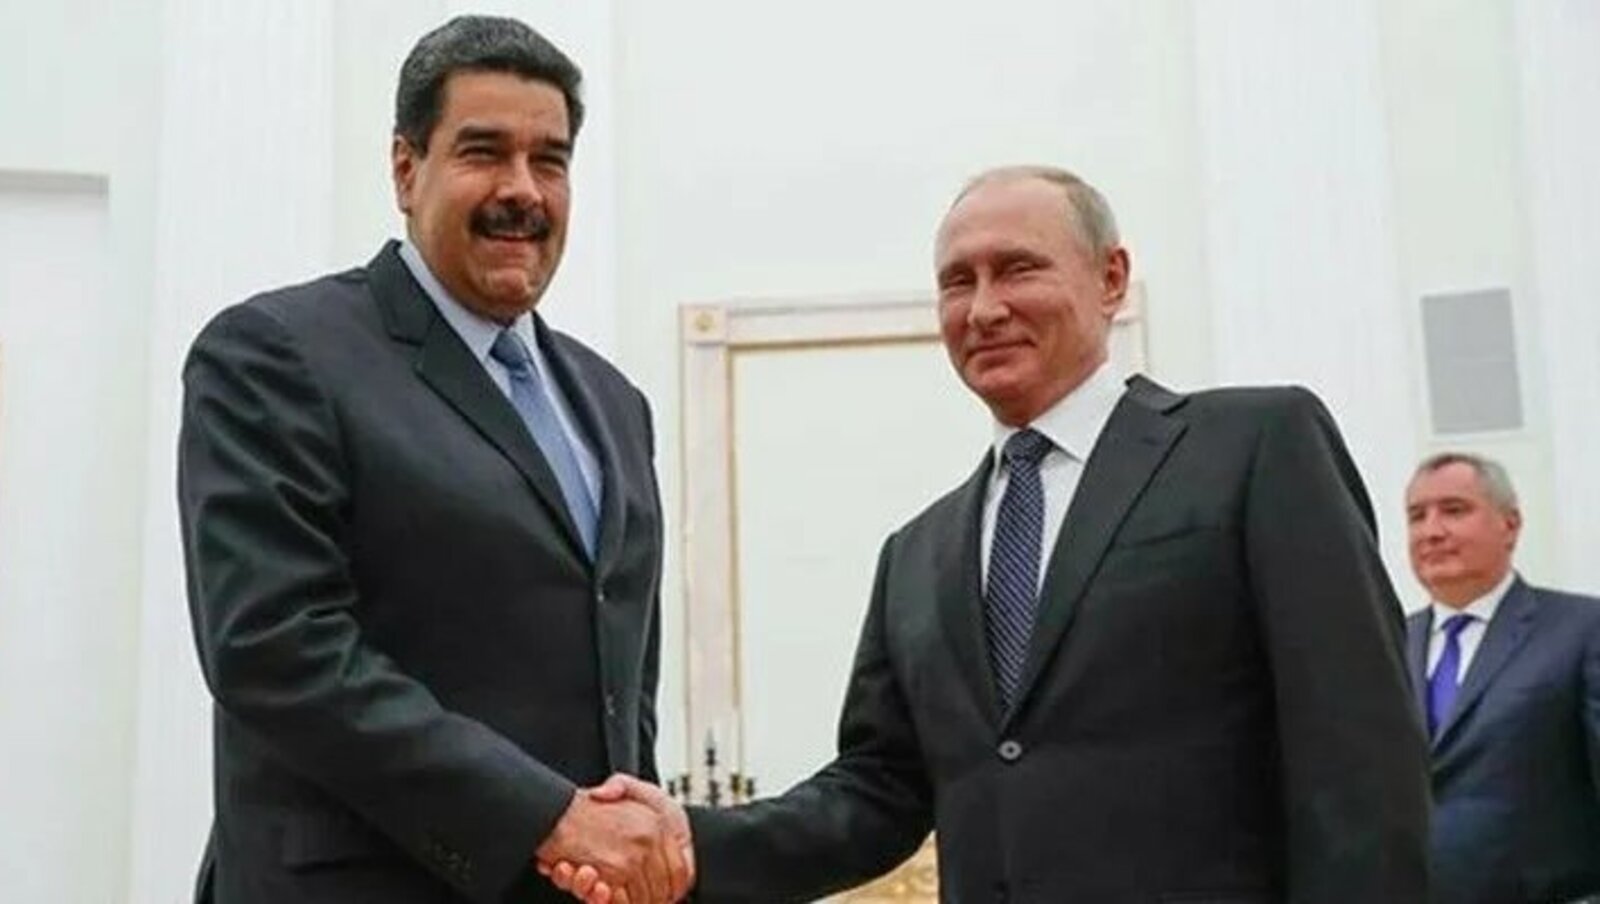 МИД Венесуэлы: президент Мадуро осудил провокации в адрес России в разговоре с Путиным